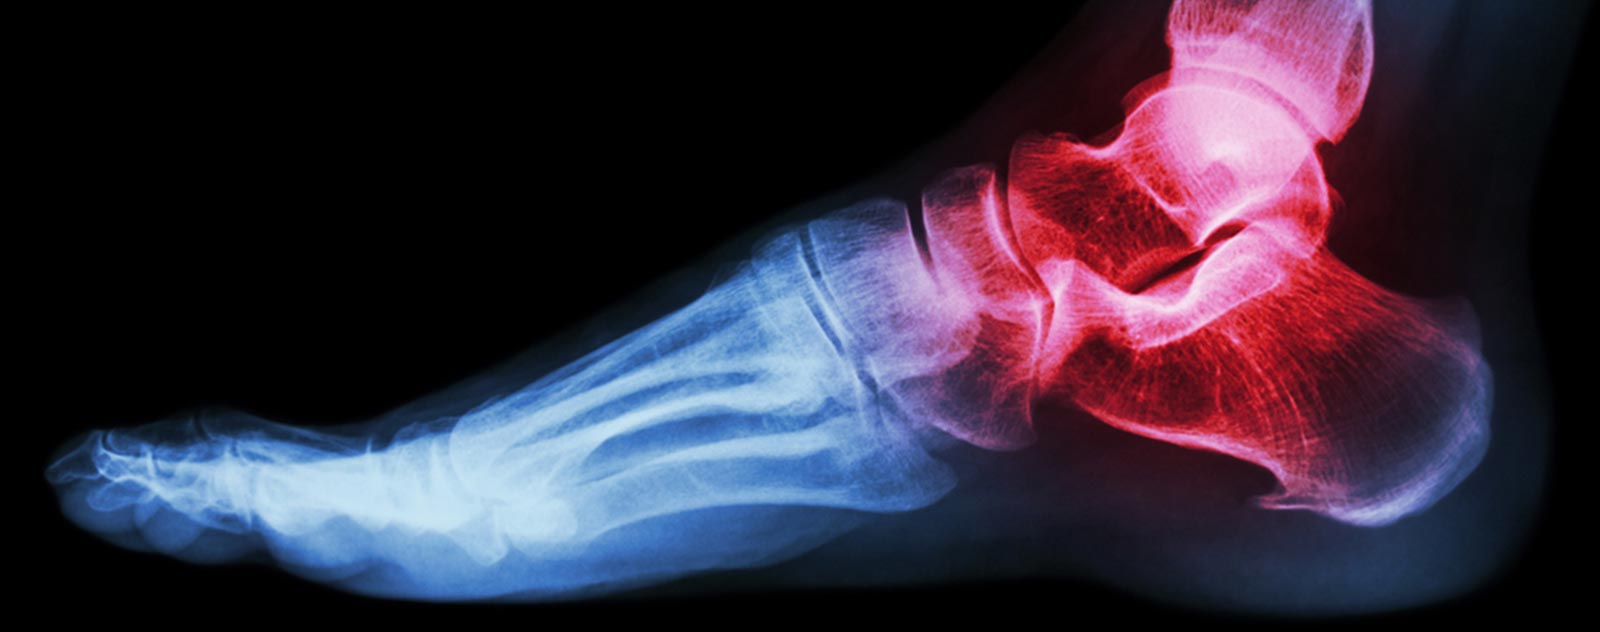 radiographies-flexion-plantaire-os-du-pieds-fait-une-entorse